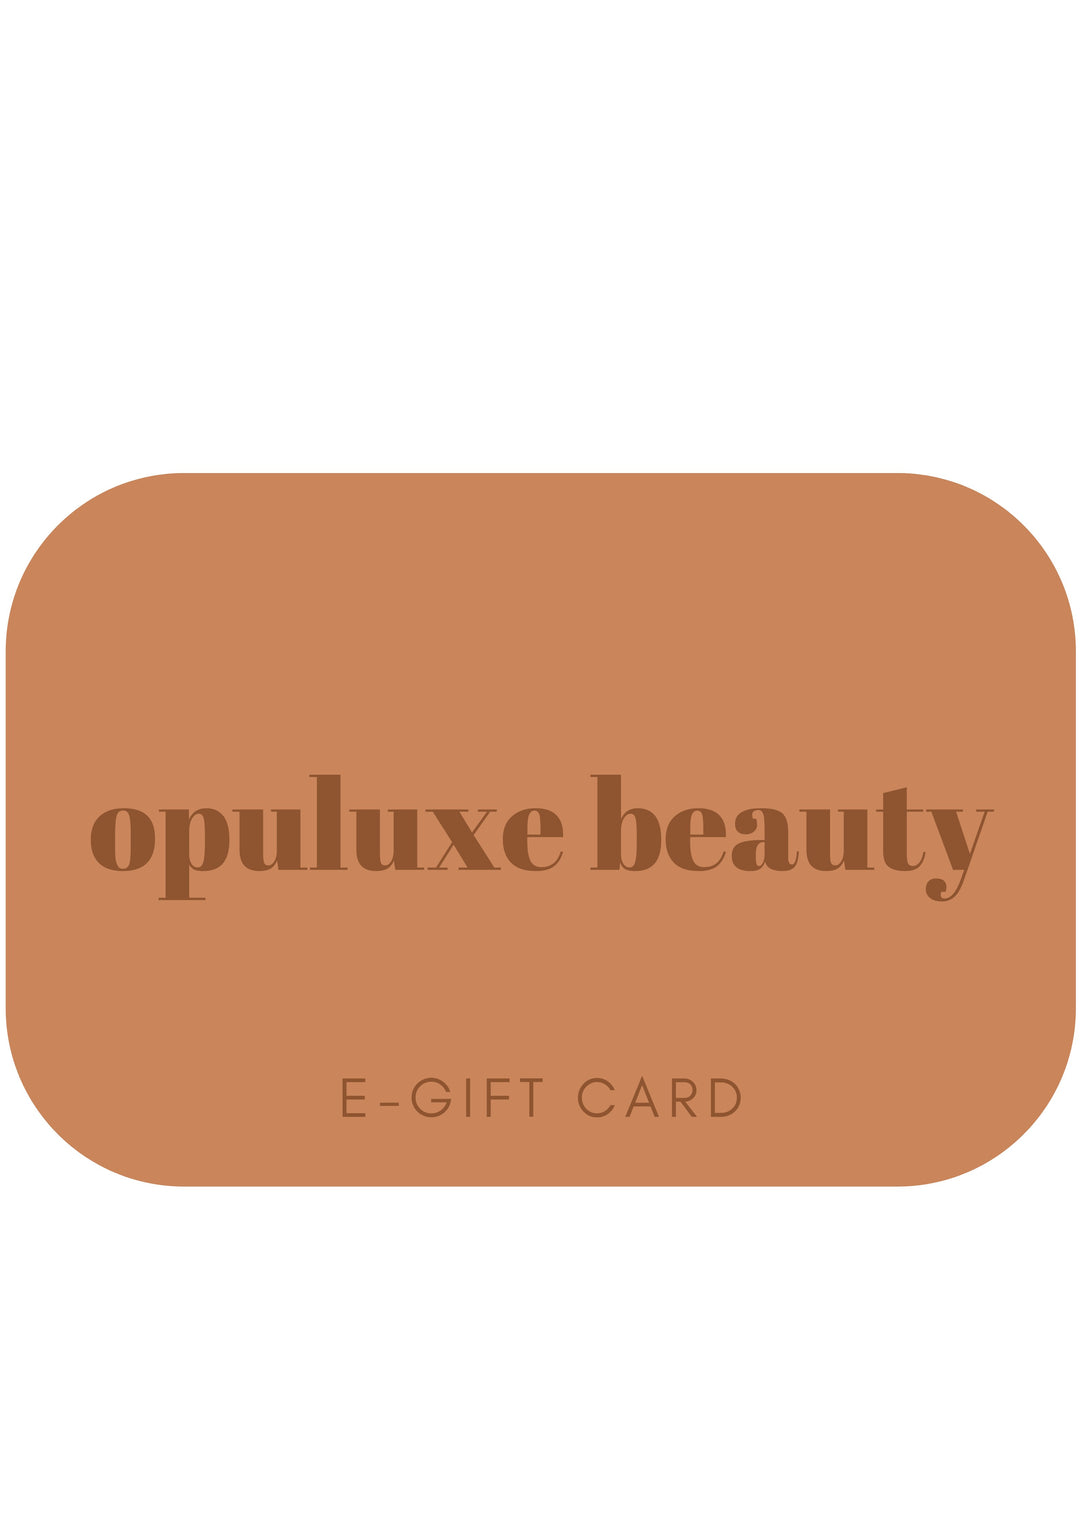 E-GIFT CARD digital gift card e-gift voucher Opuluxe Beauty®